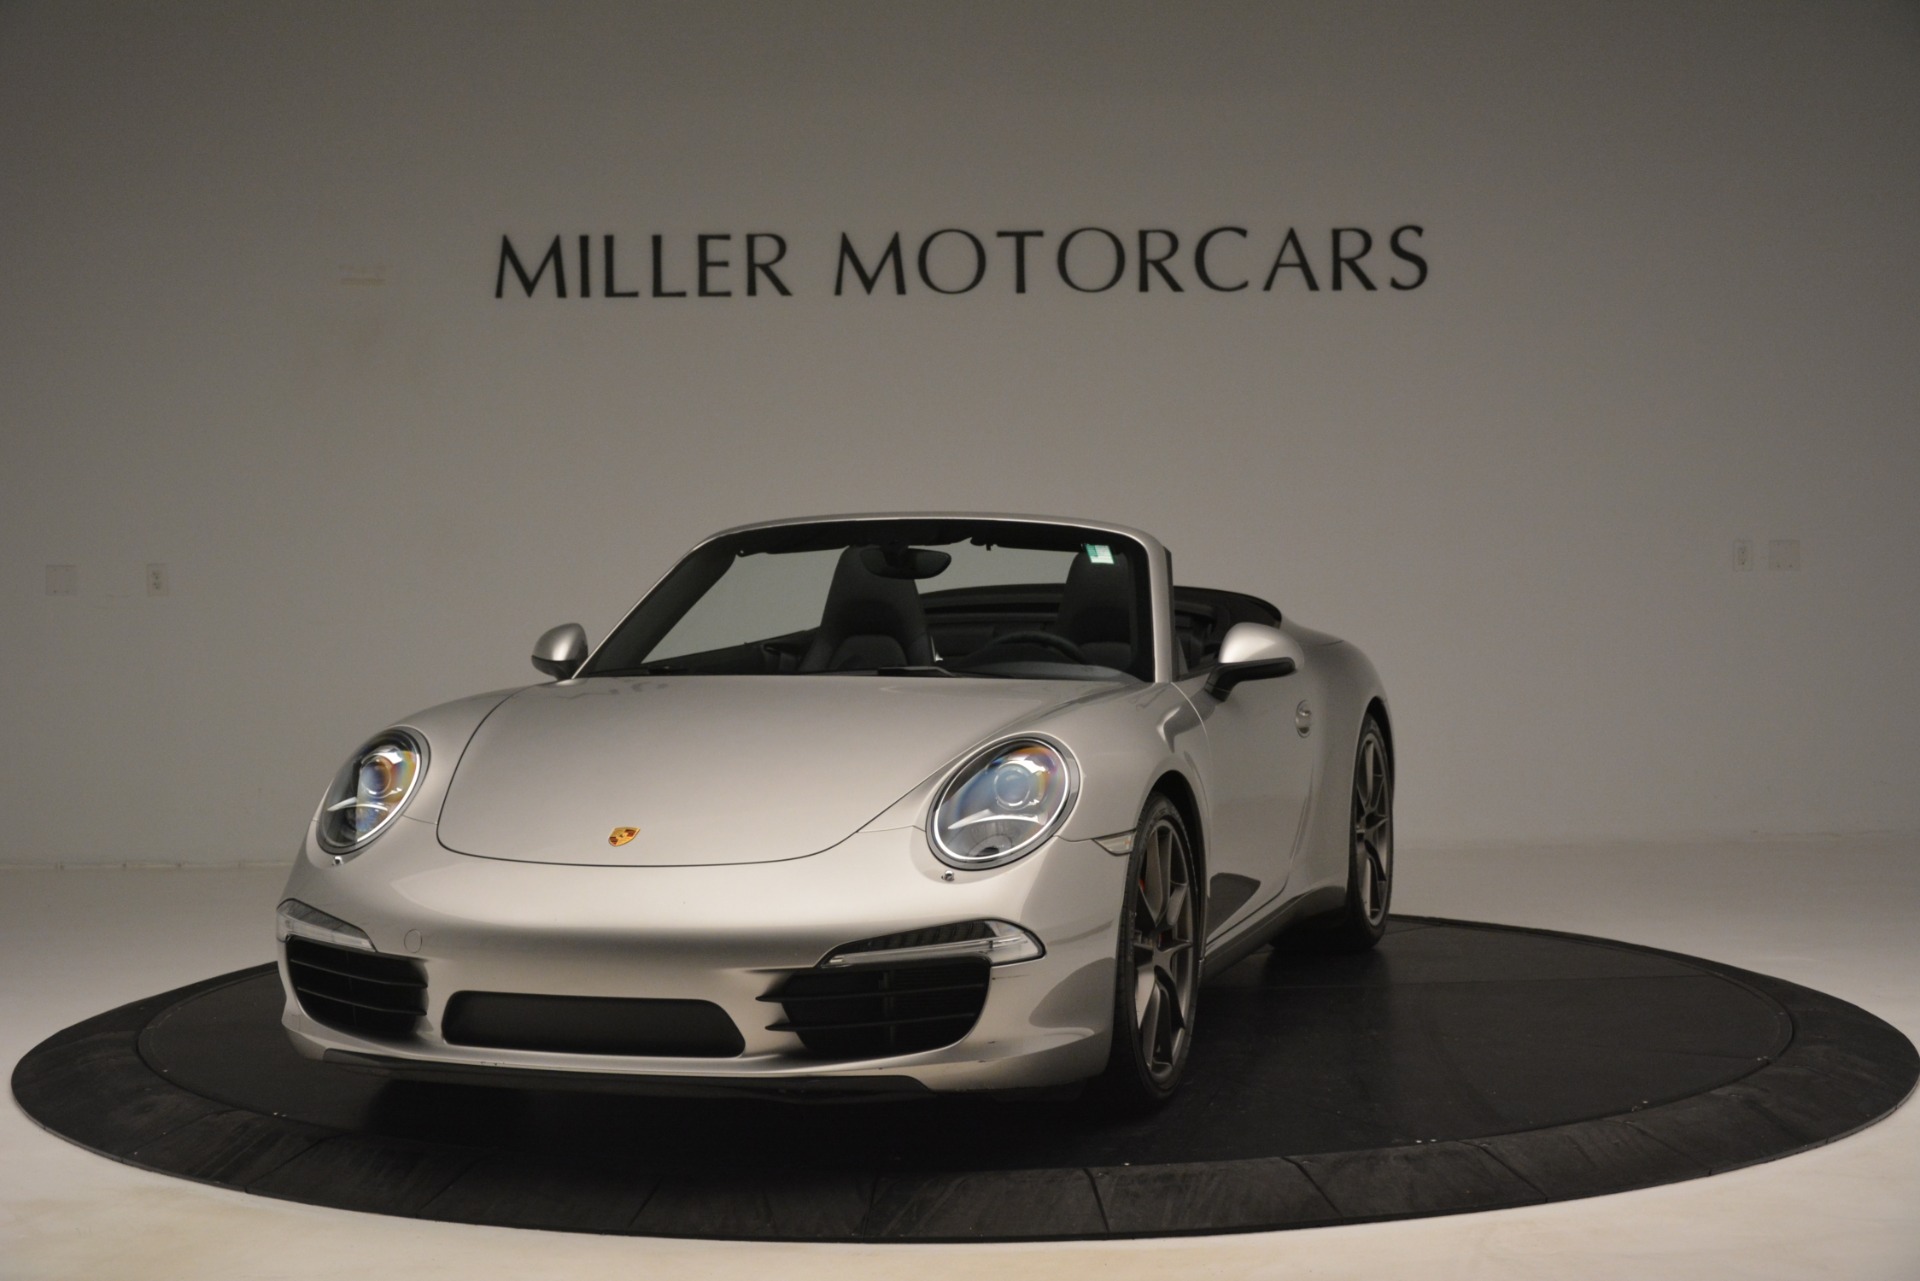 Used-2013-Porsche-911-Carrera-S